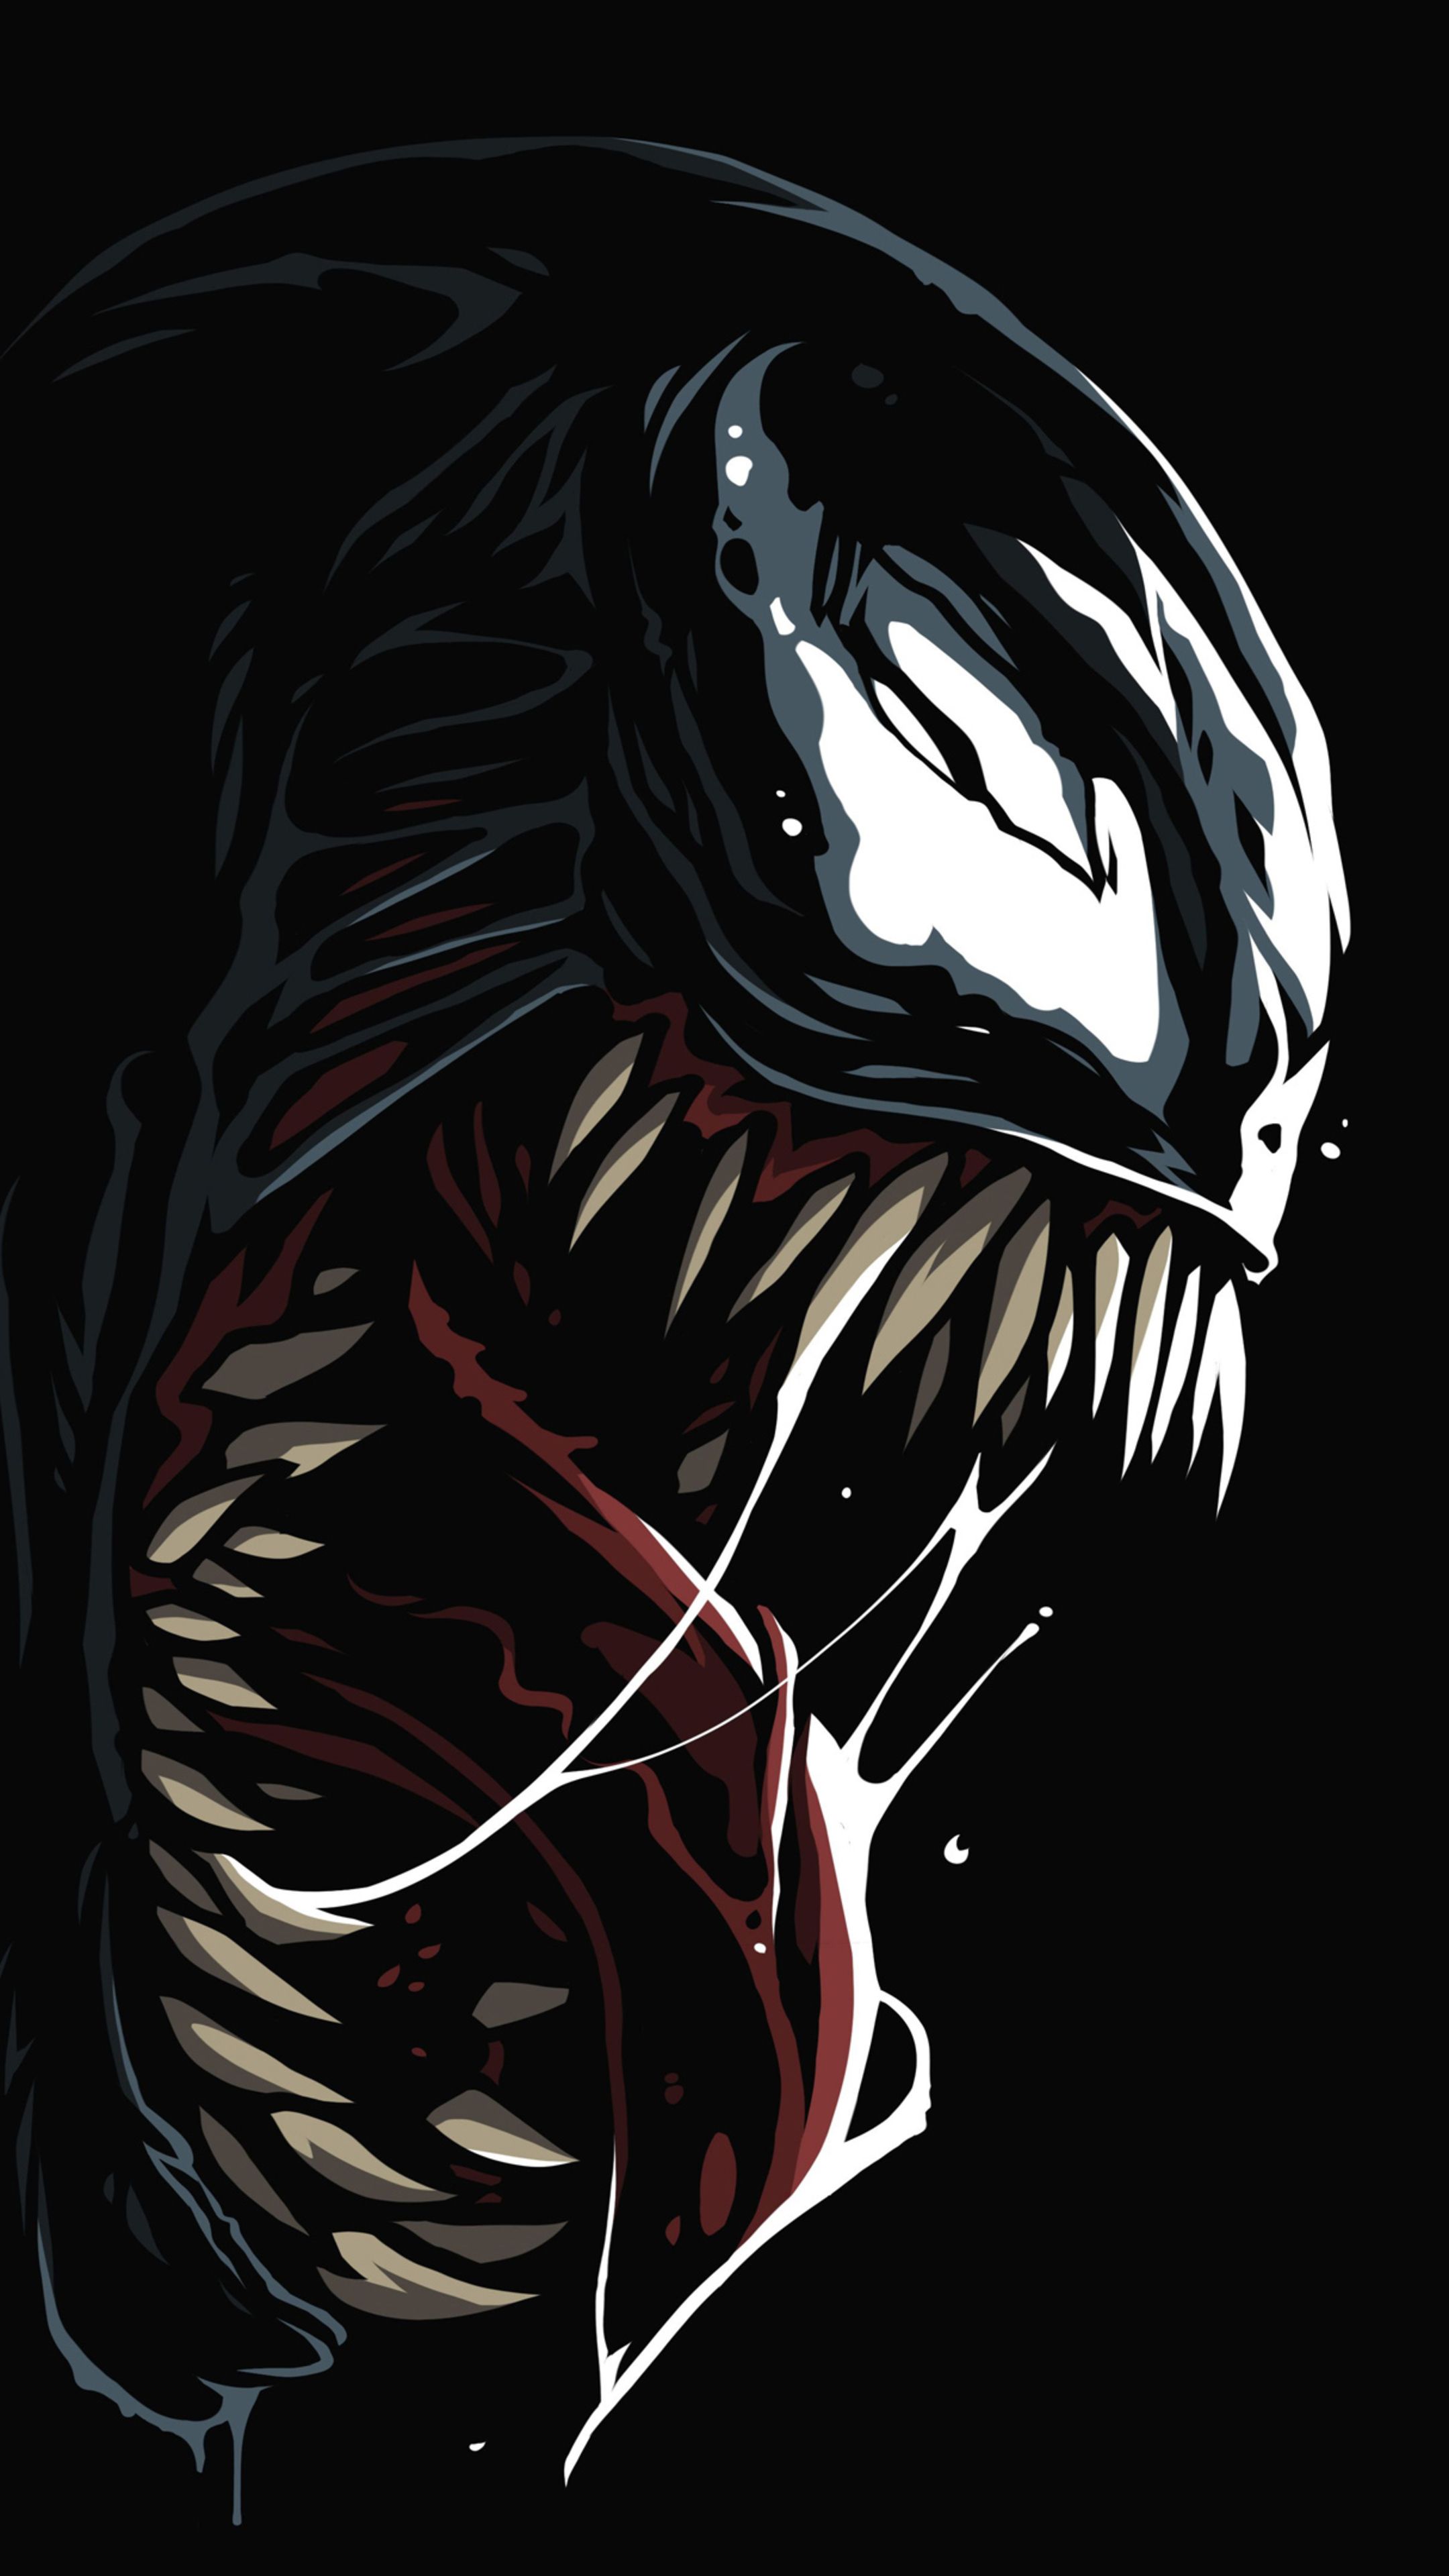 Venom Amoled 4k In 2160x3840 Resolution. Deadpool wallpaper, Marvel comics wallpaper, HD anime wallpaper